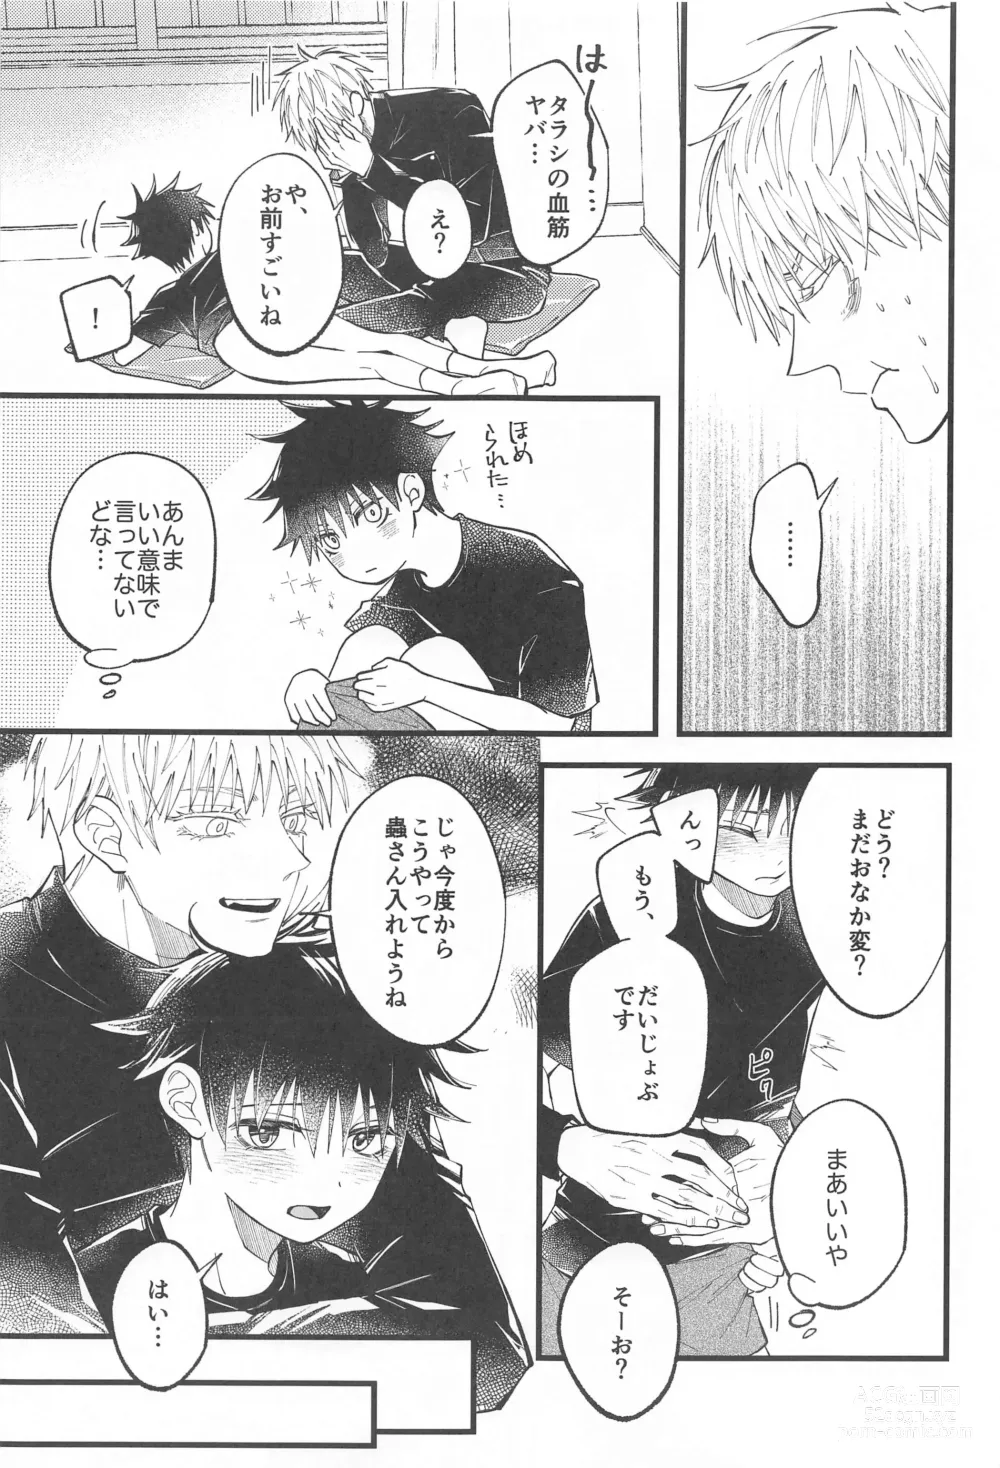 Page 12 of doujinshi Hara no Mushi ga Osamaranai!